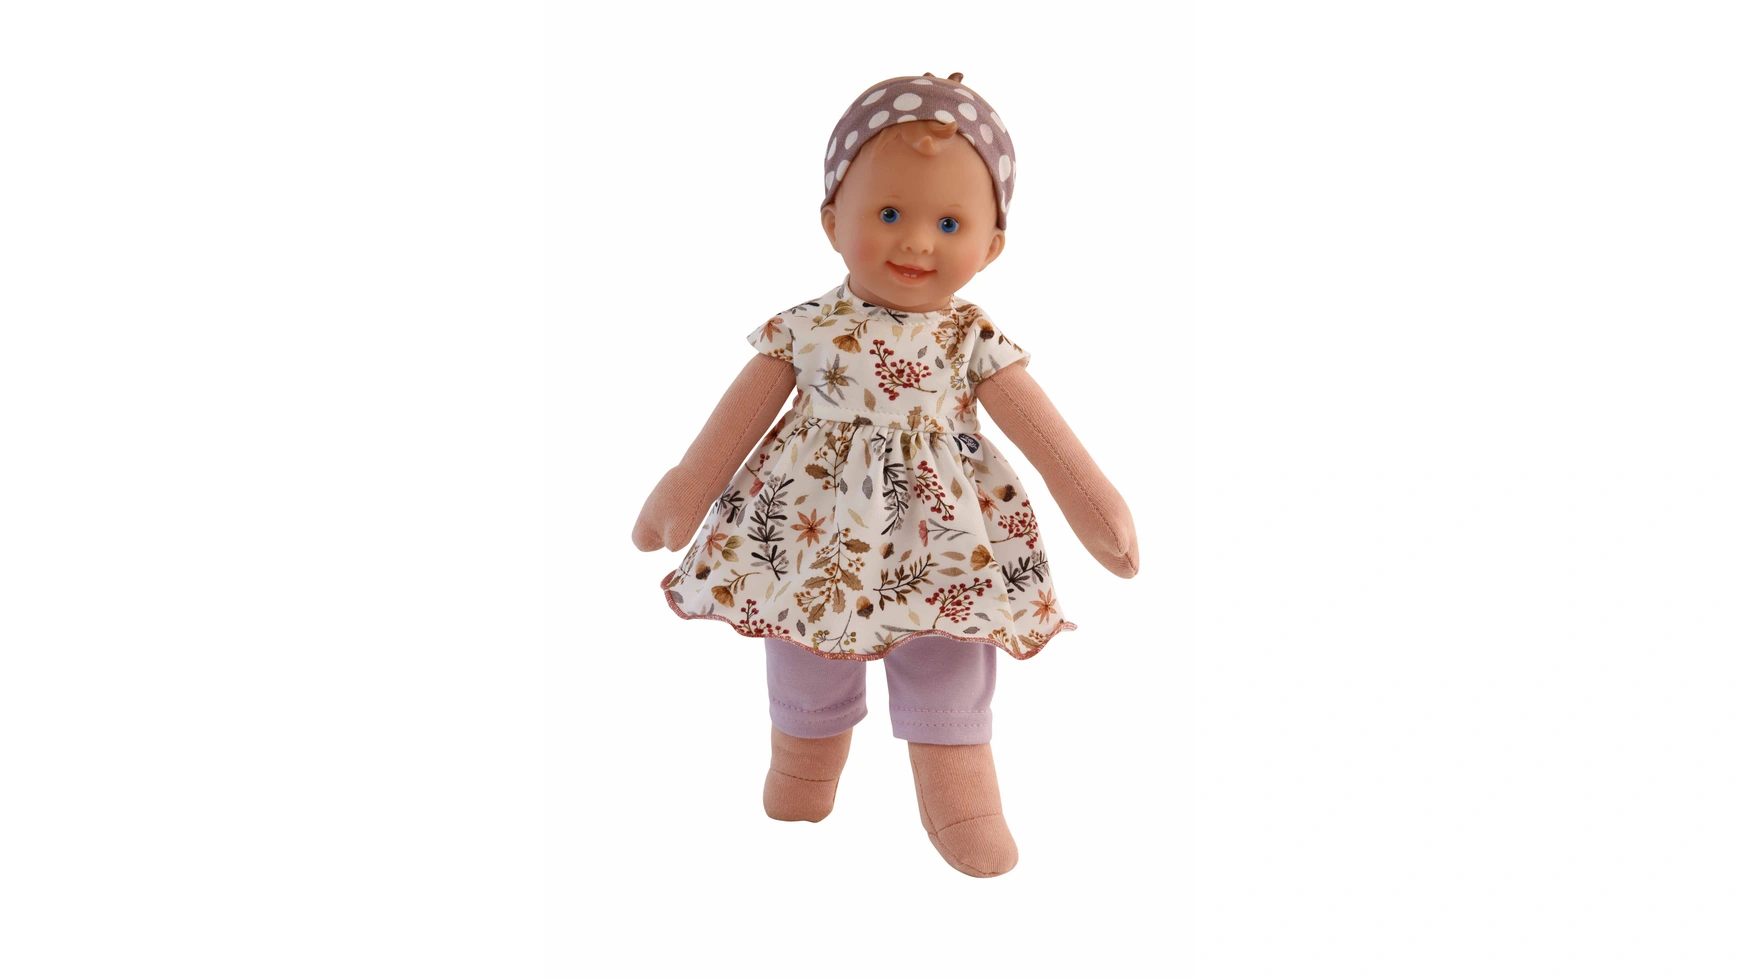 Schildkroet-Puppen Кудри куклы, 30 см, окрашенные волосы, голубые нарисованные глаза, цветочная одежда фиолетового/коричневого/белого цвета пазл мягкая для малышей зверьки п 5421